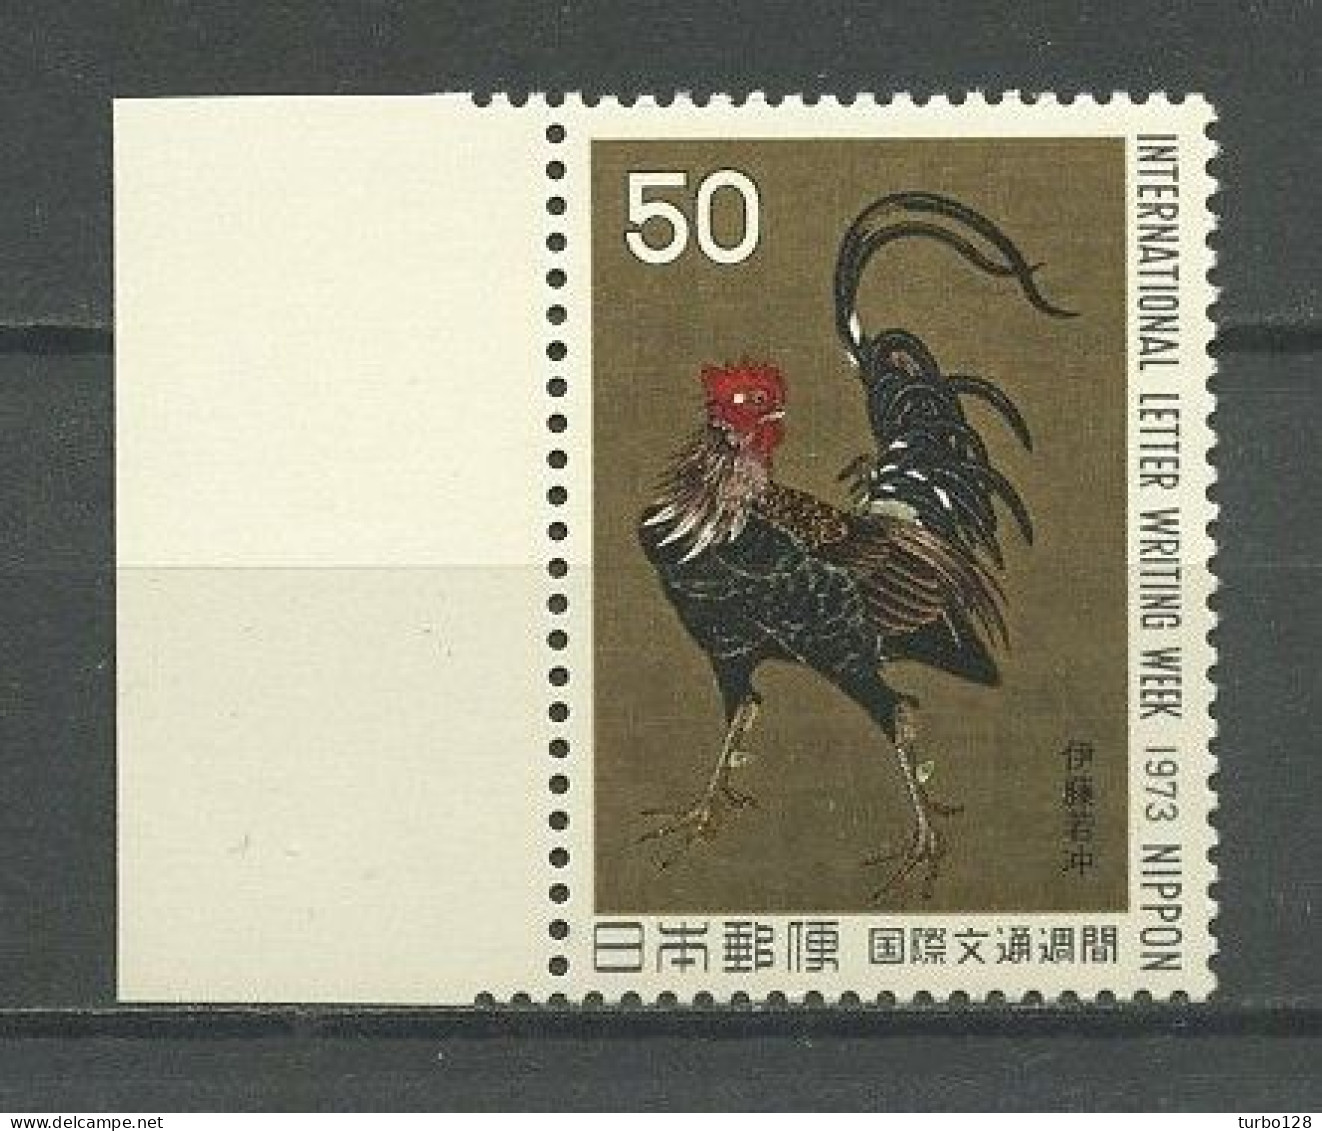 JAPON 1973 N° 1091 ** Neuf MNH Superbe C 1,25 € Faune Oiseaux Coq Guerrier De J. Ito La Lettre Peintures Birds Painting - Ungebraucht